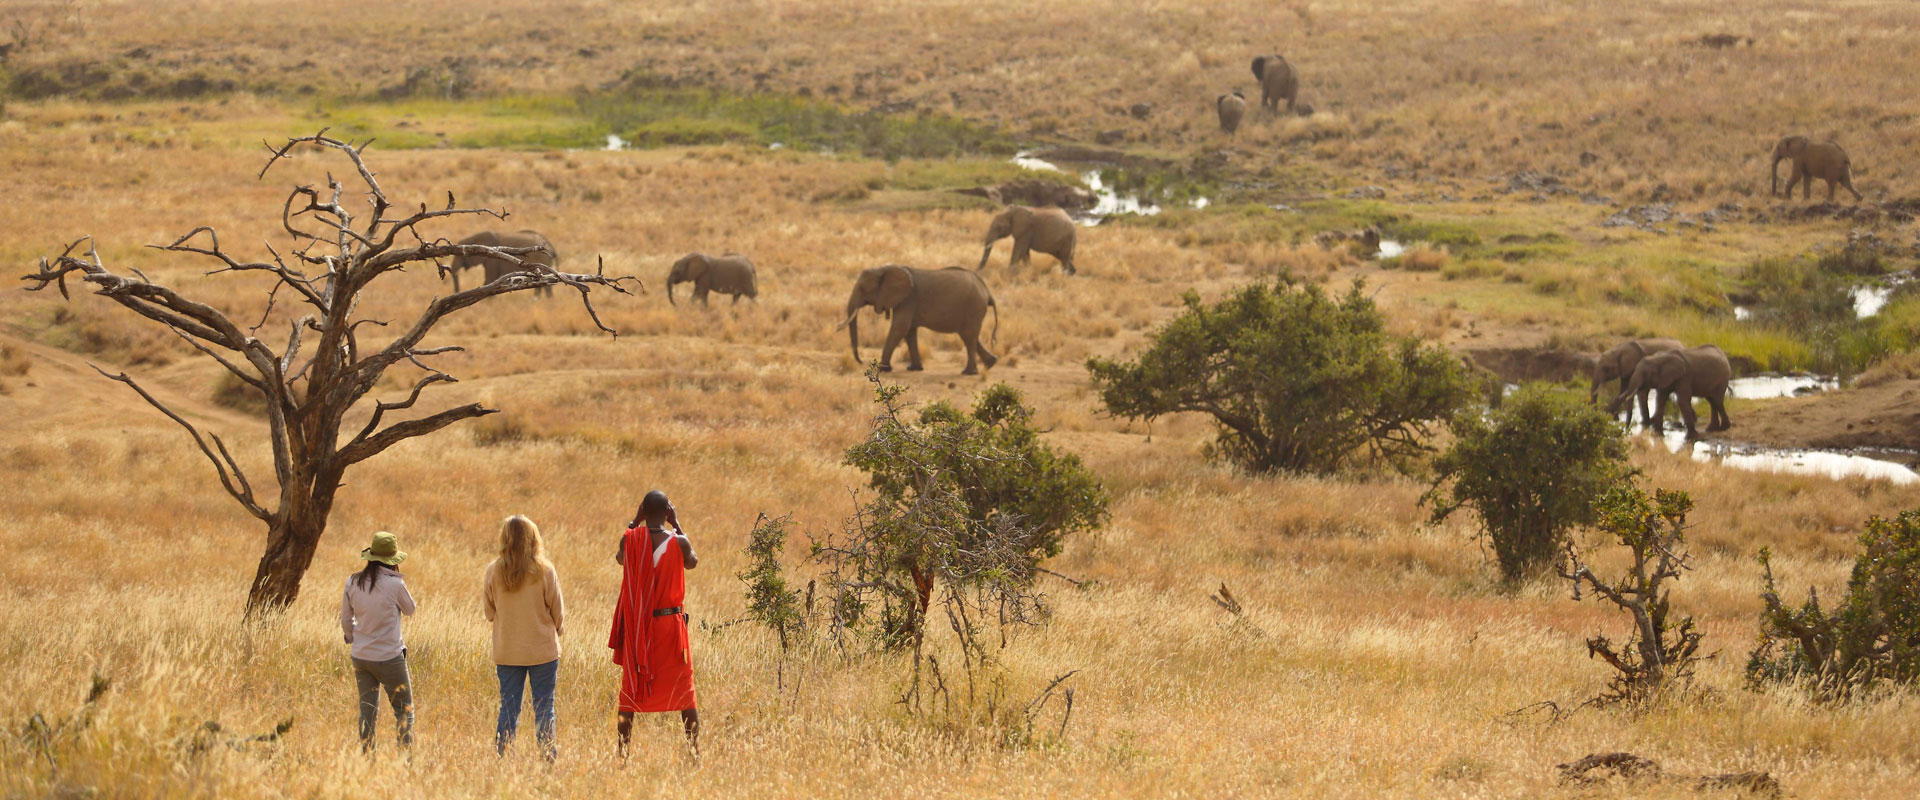 Serian Masai Mara